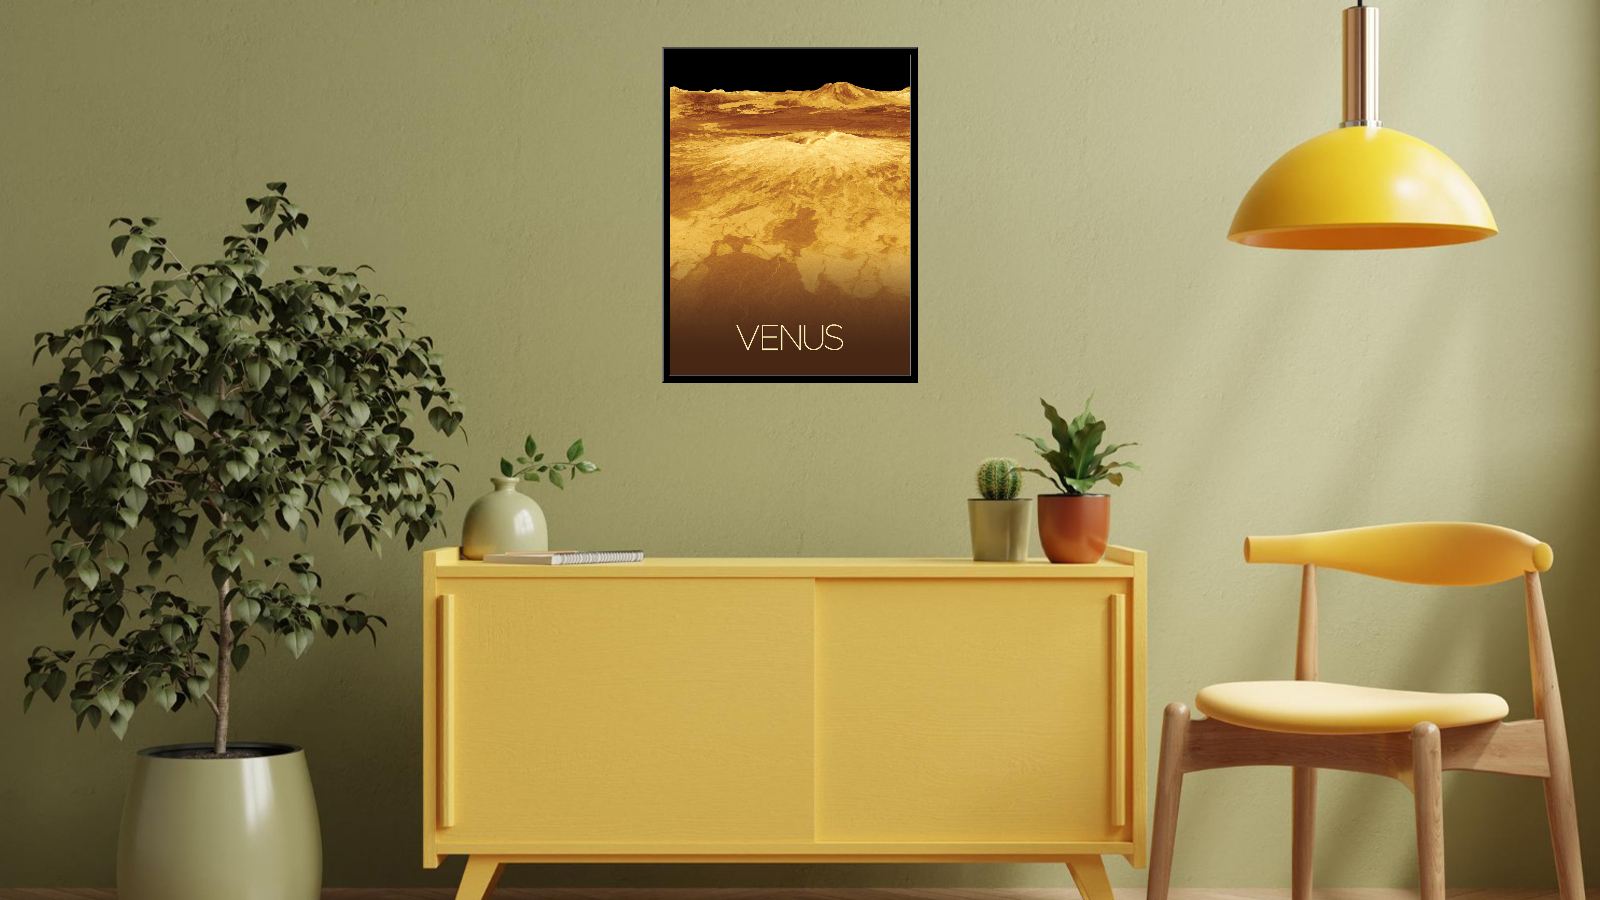 Venus - 2